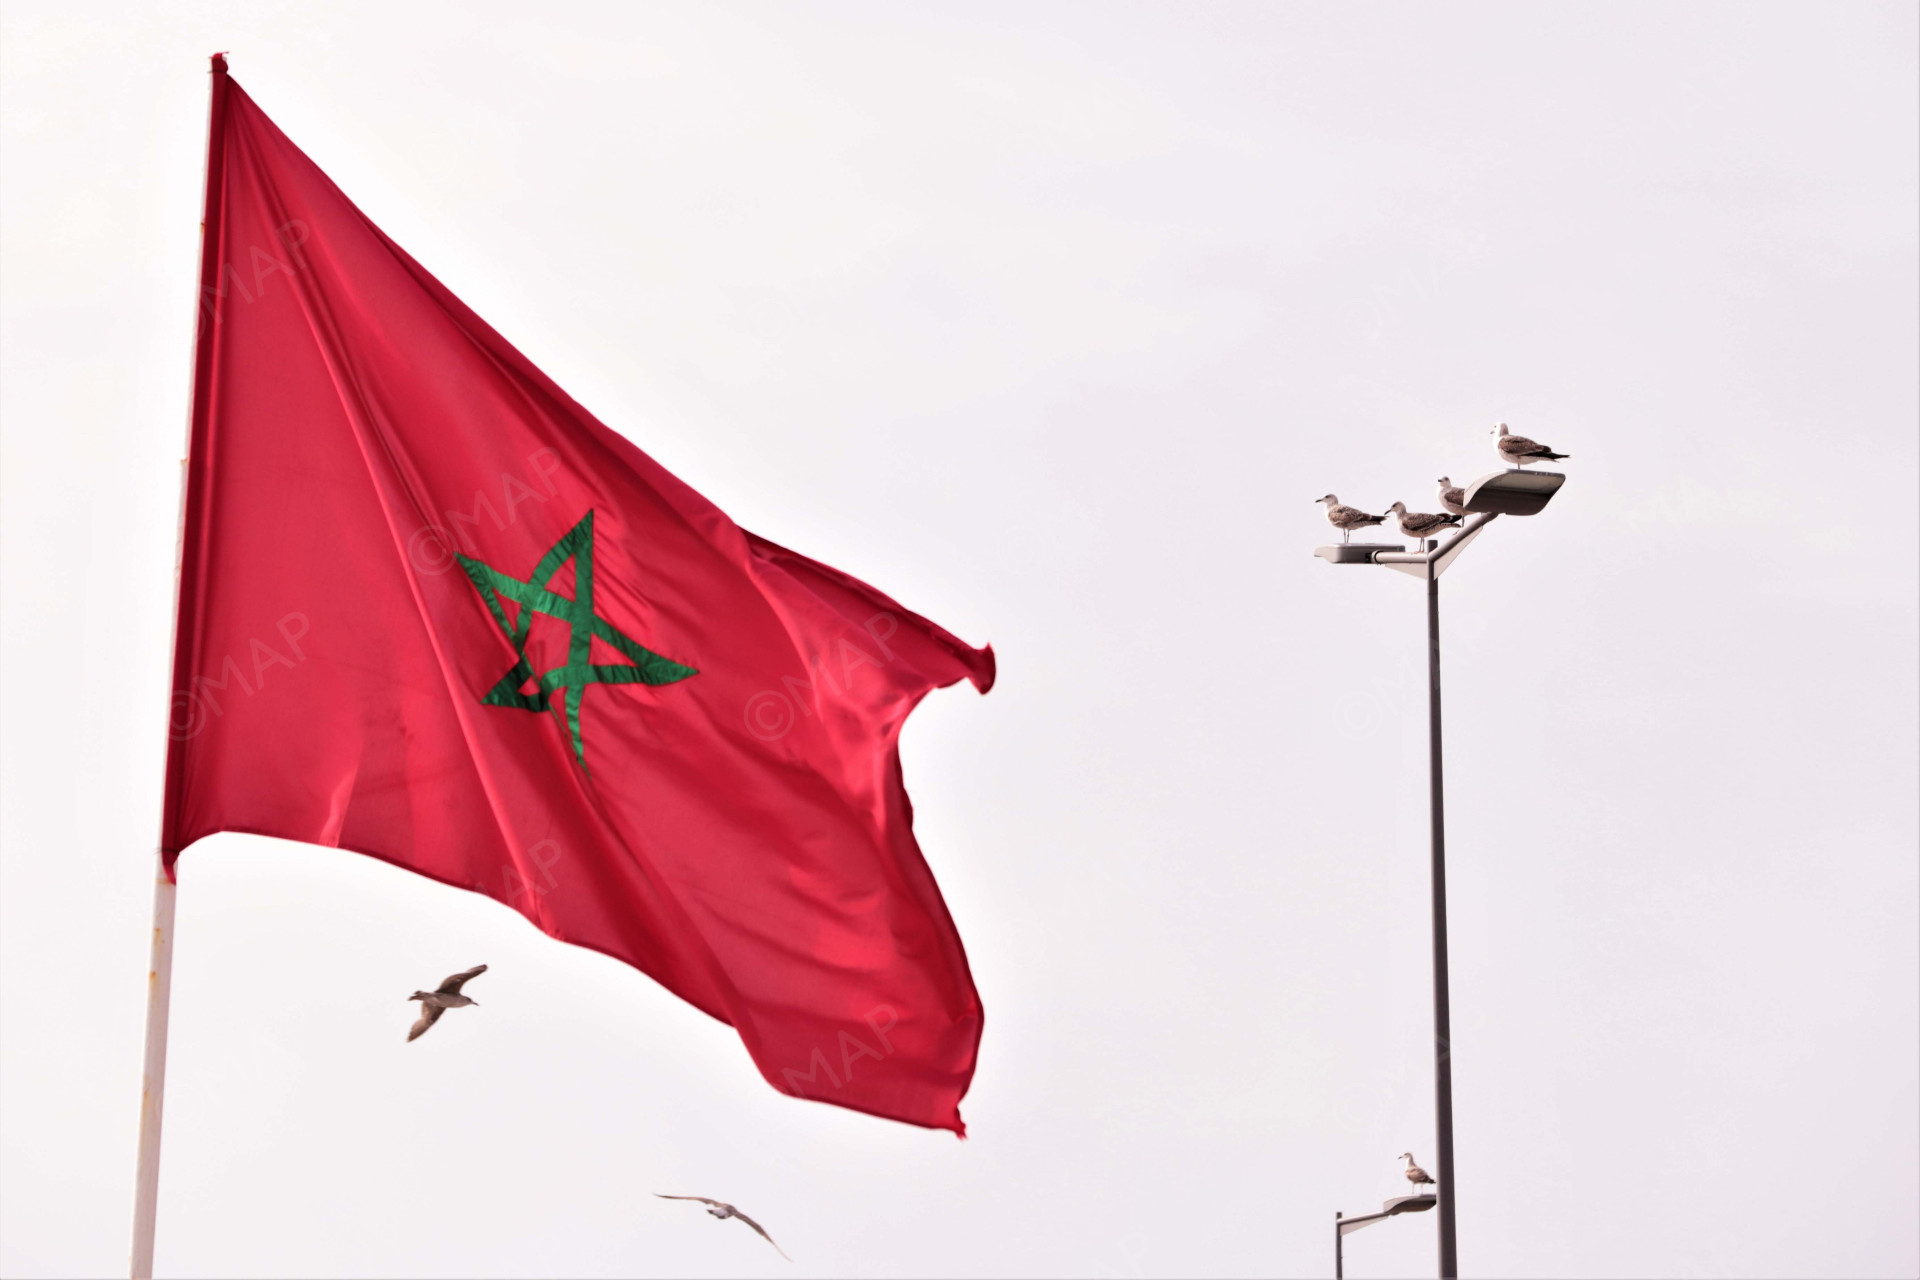 لندن: المحكمة الإدارية ترفض دعوى ضد اتفاق الشراكة المغربي-البريطاني